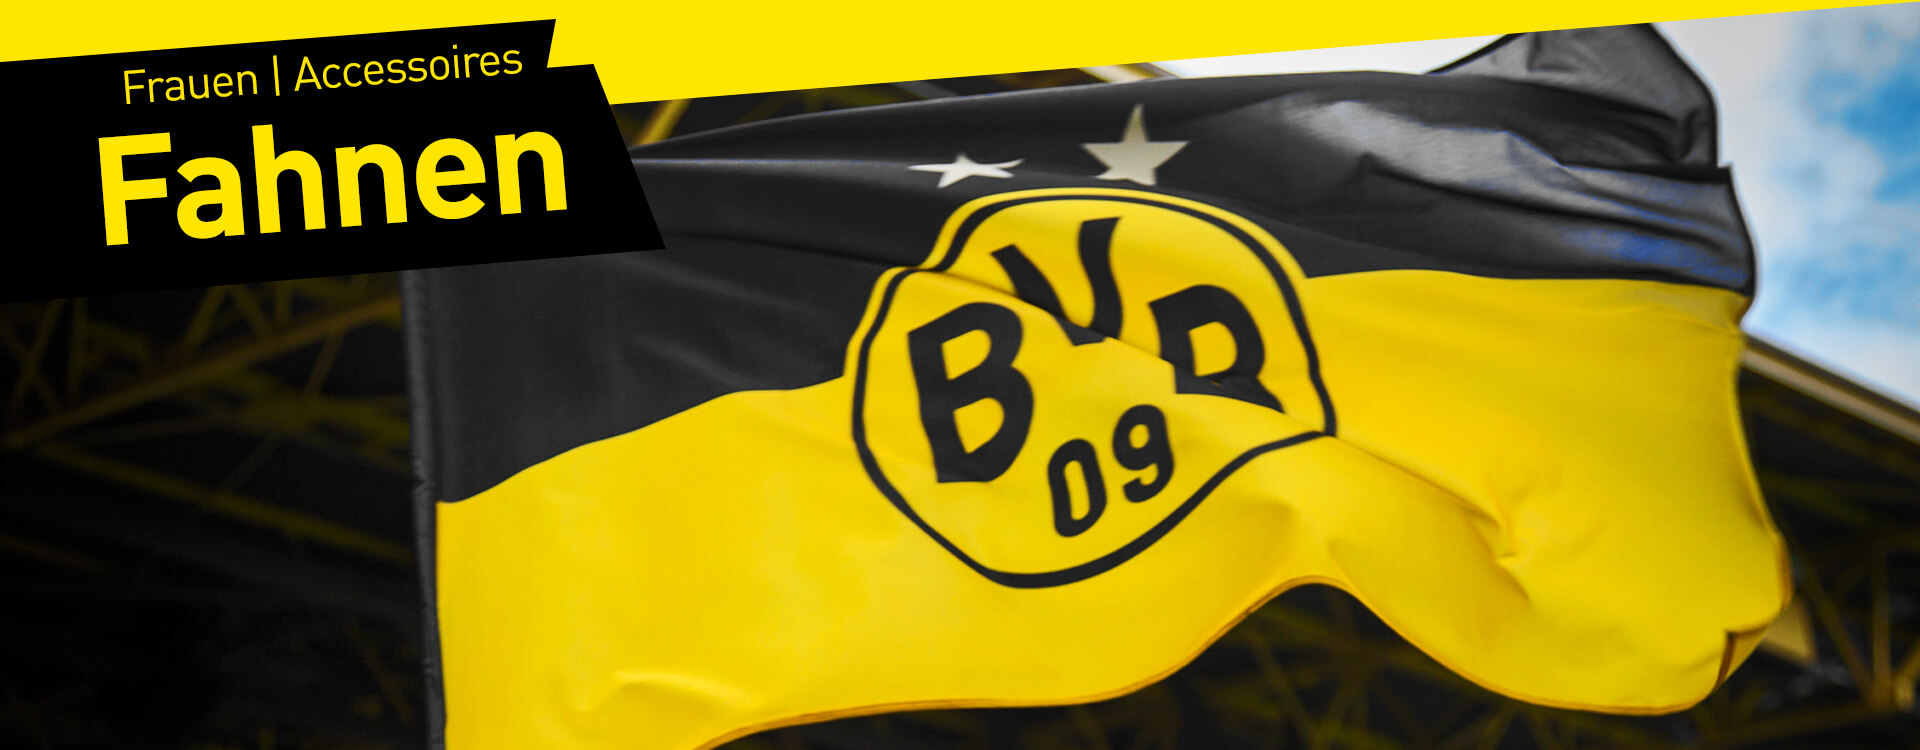 HISSFAHNE FAHNE FLAGGE 250x150 BORUSSIA DORTMUND BVB „Borussia Dortmund“ NEU 